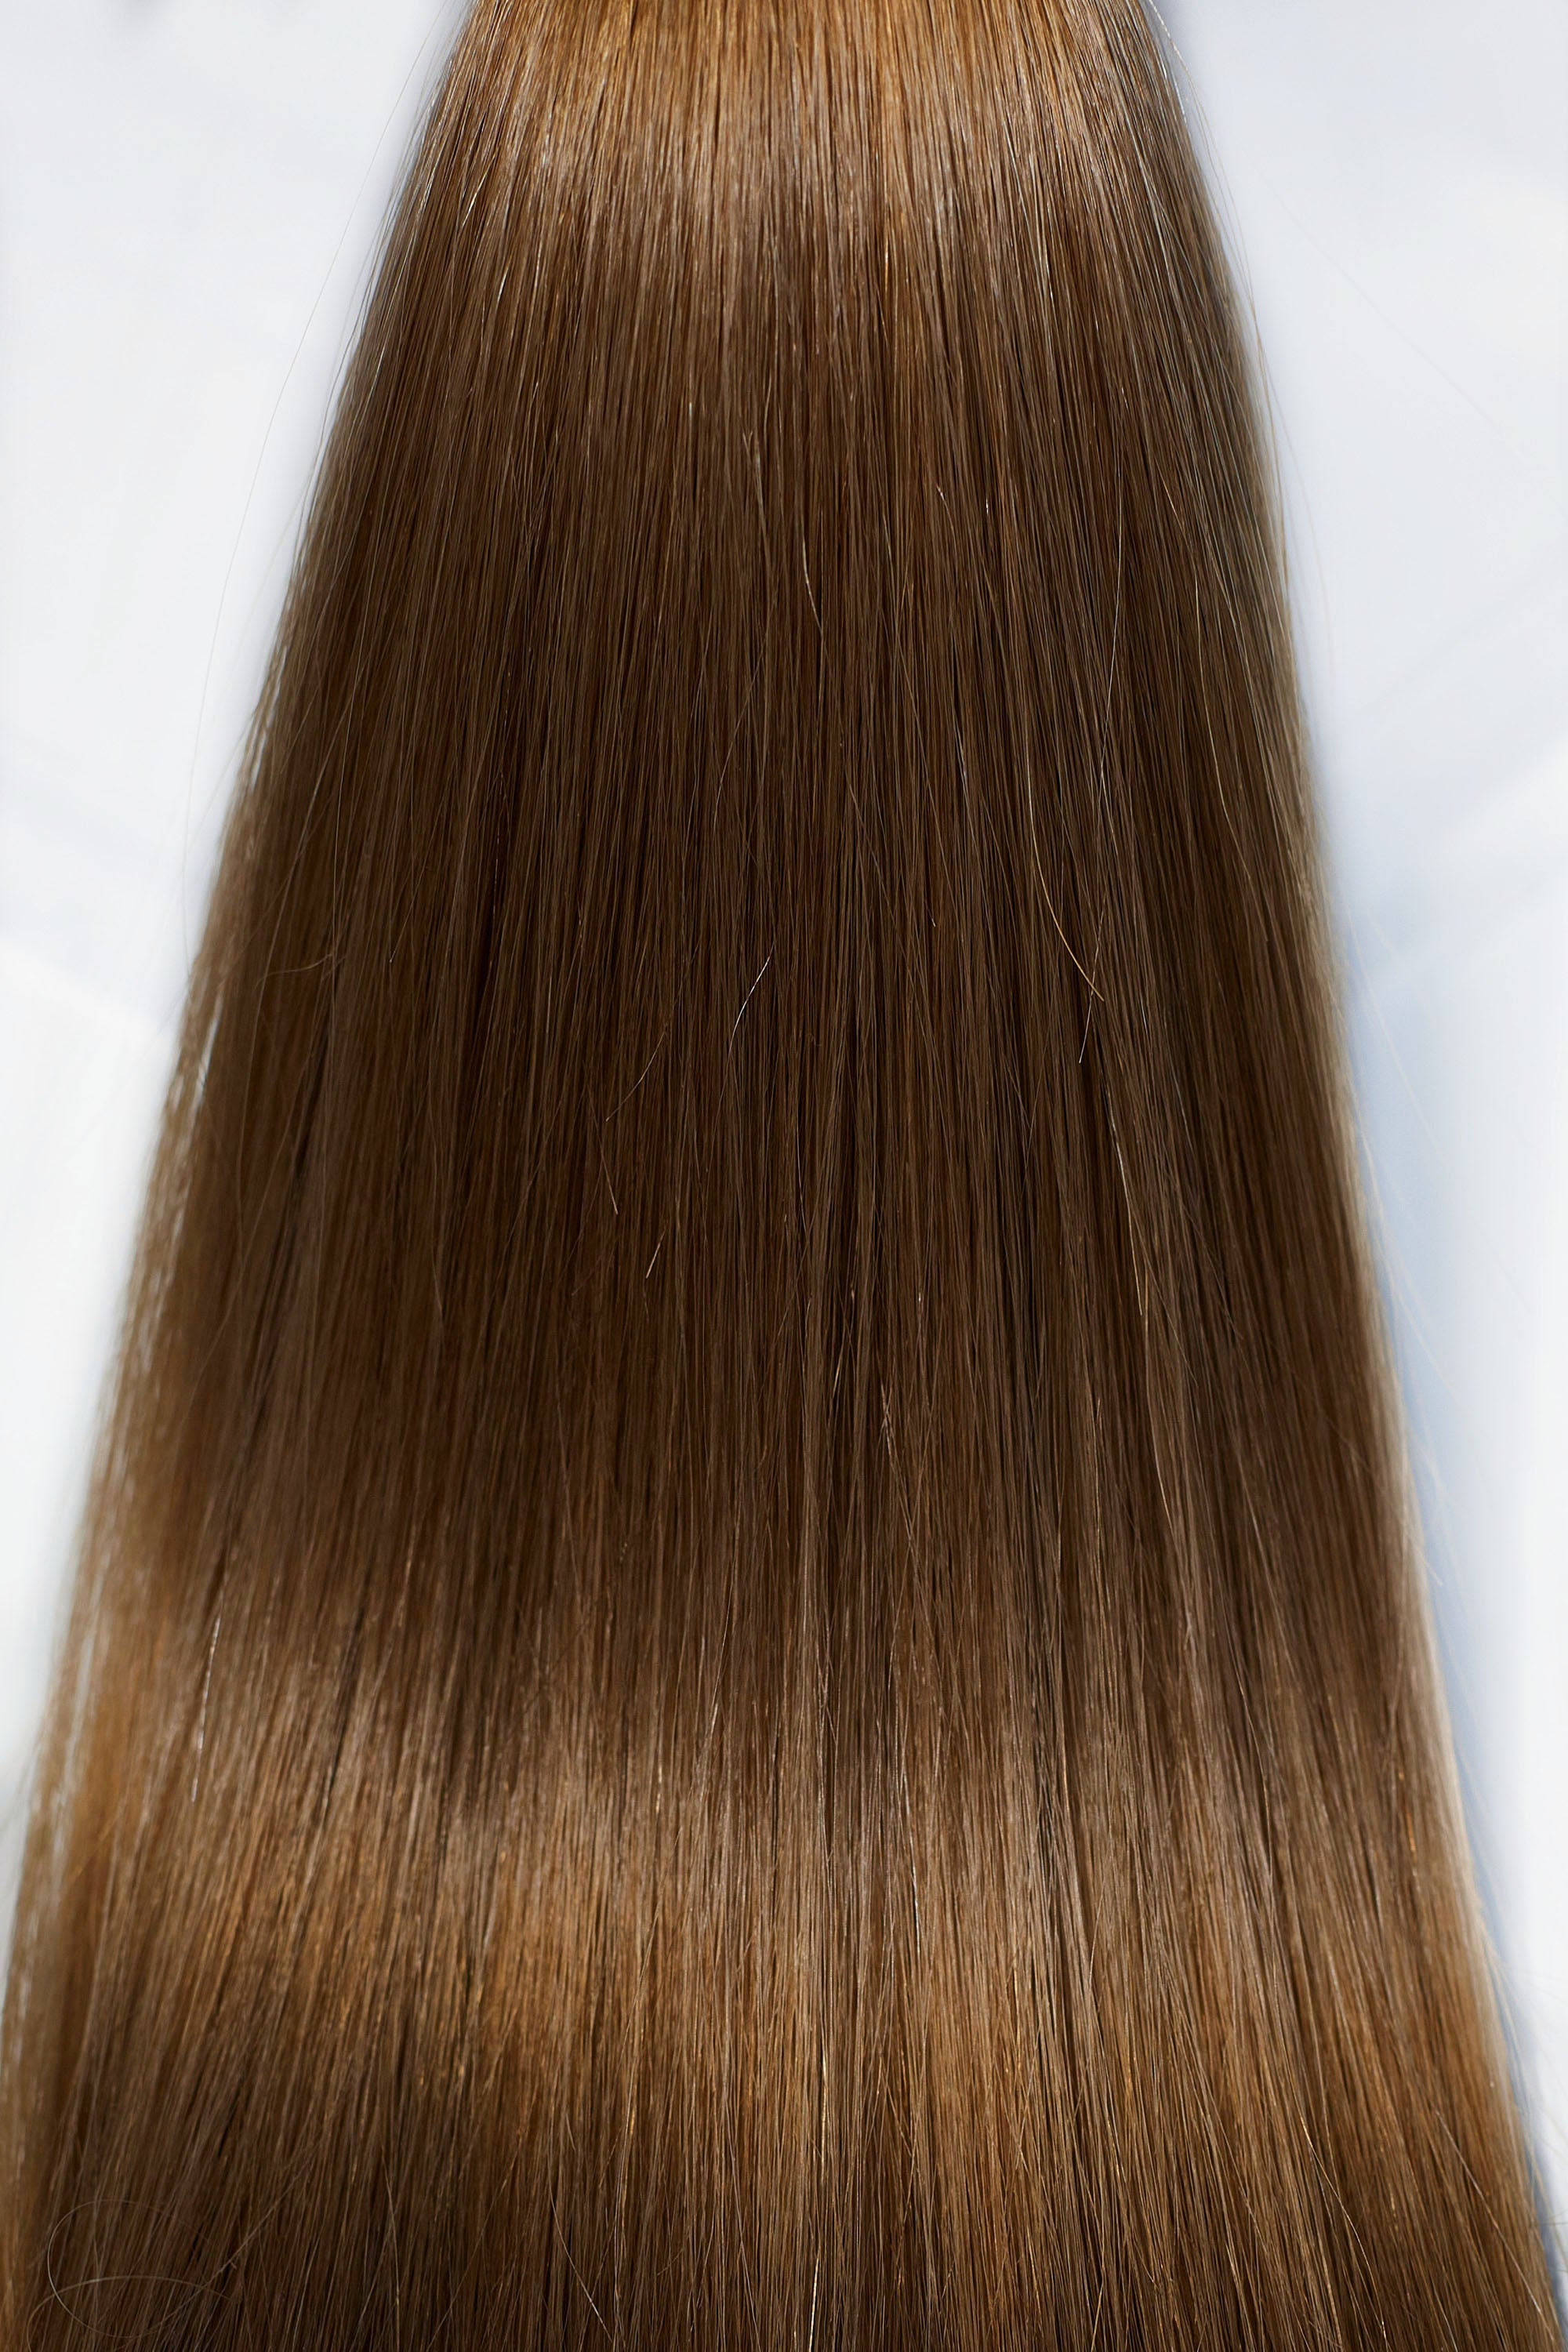 Behair professional Bulk hair "Premium" 16" (40cm) Natural Straight Chestnut #6 - 25g hair extensions